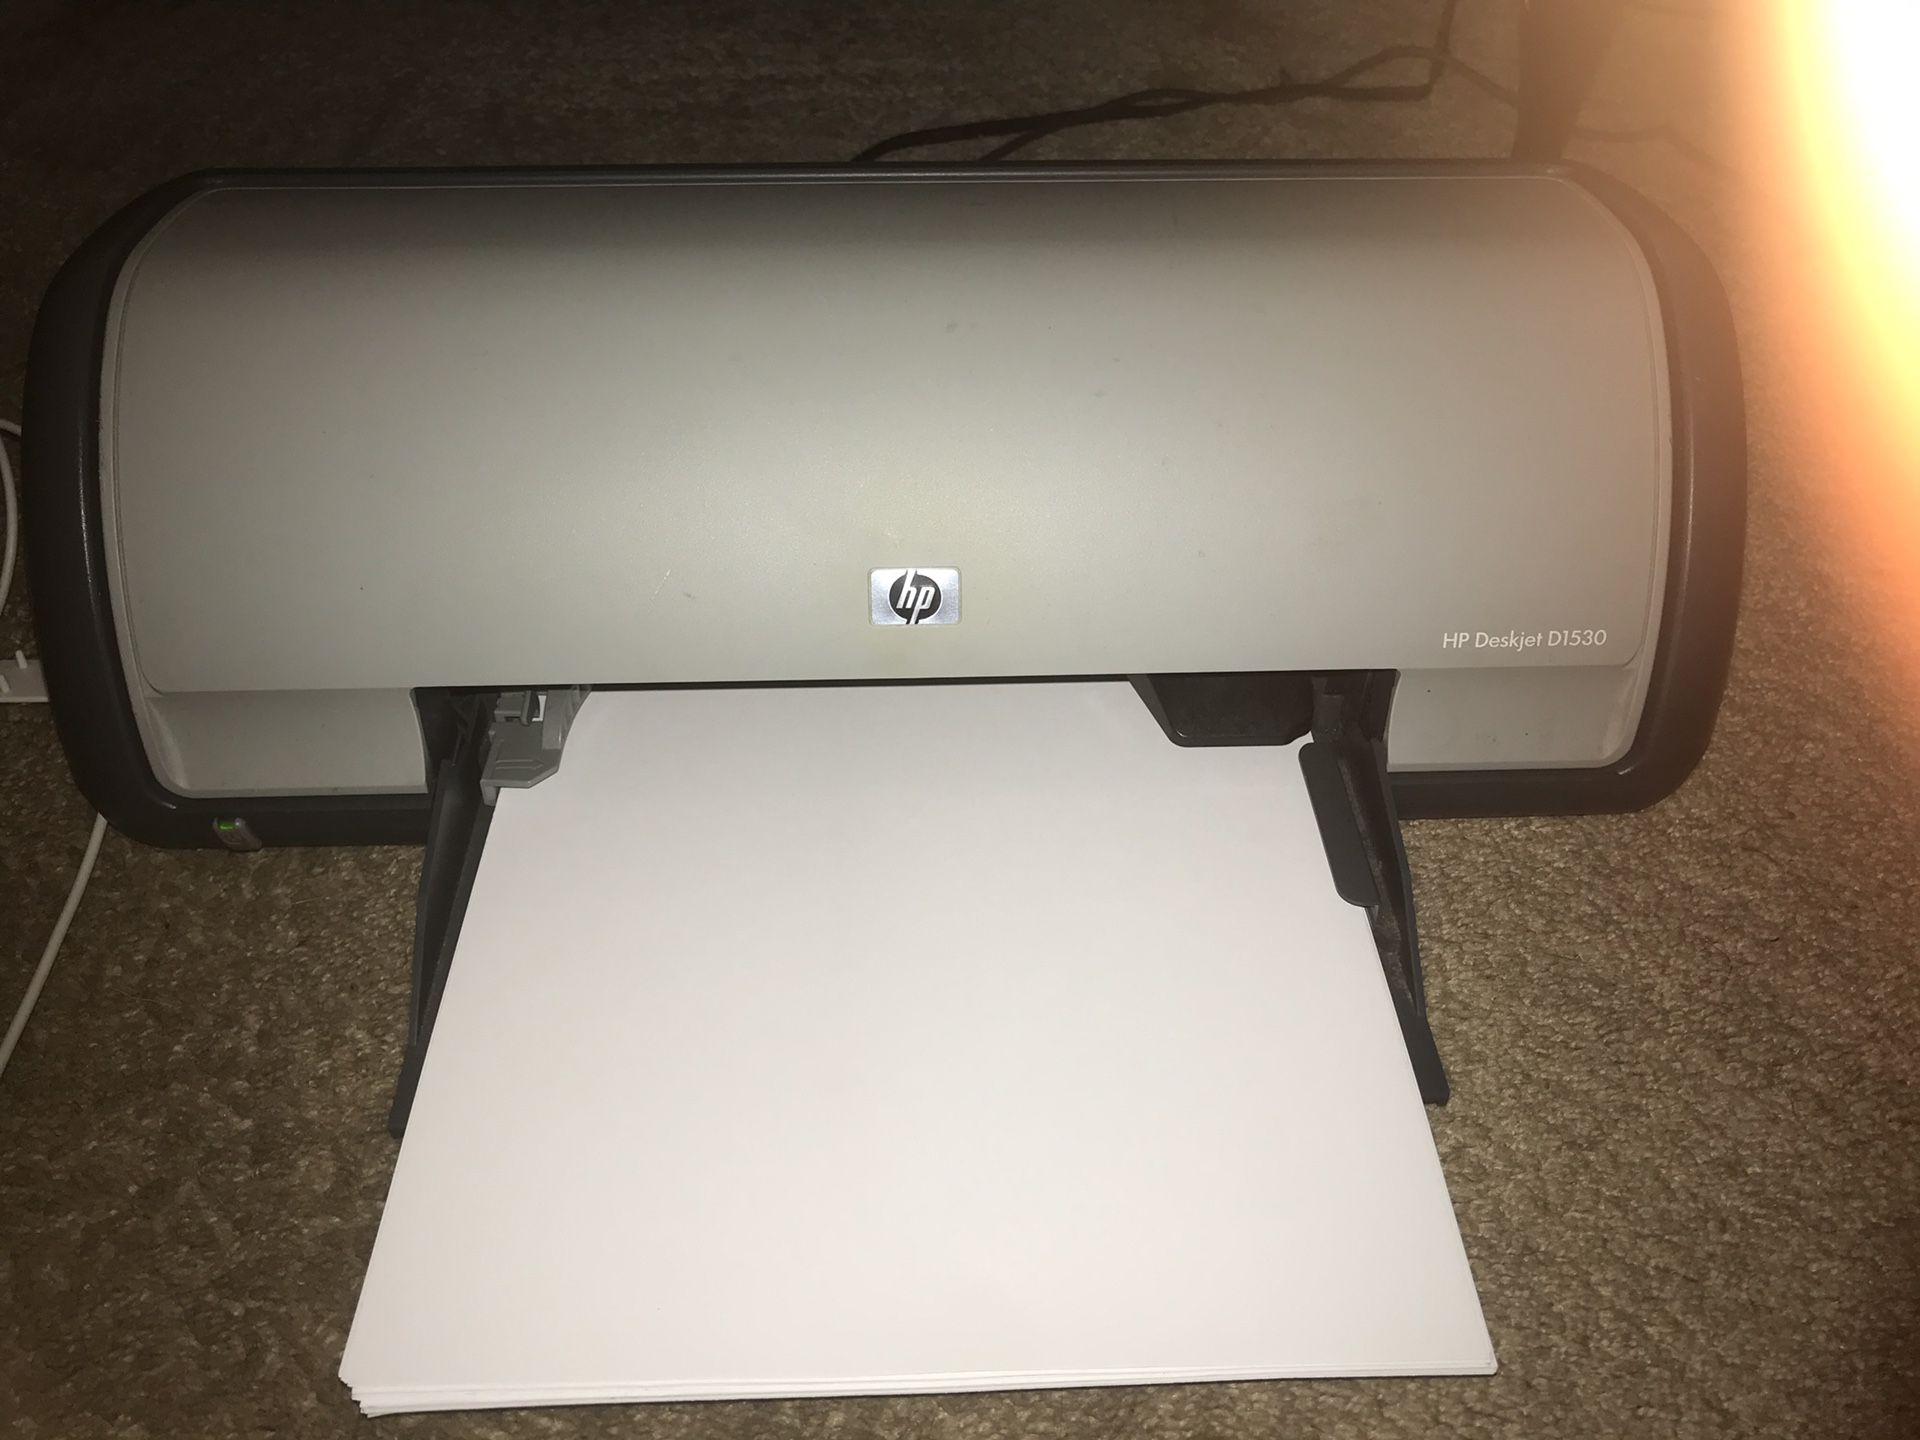 Printer- Deskjet D1530